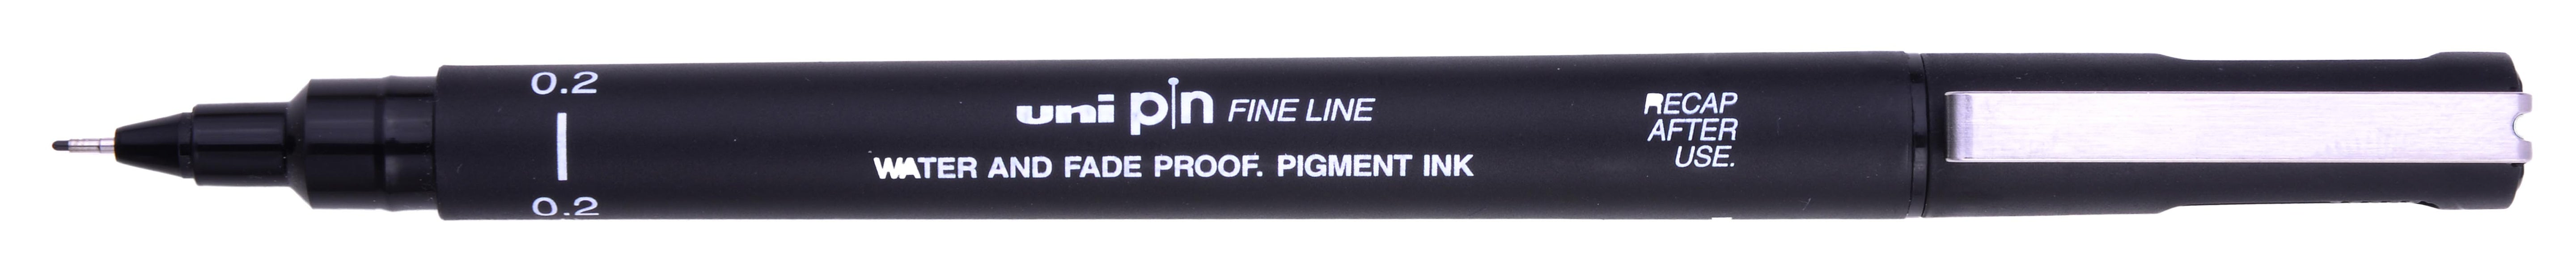 Uni Pin Fine Line Black Waterproof Drawing Pen 0.2mm creates a very fine line